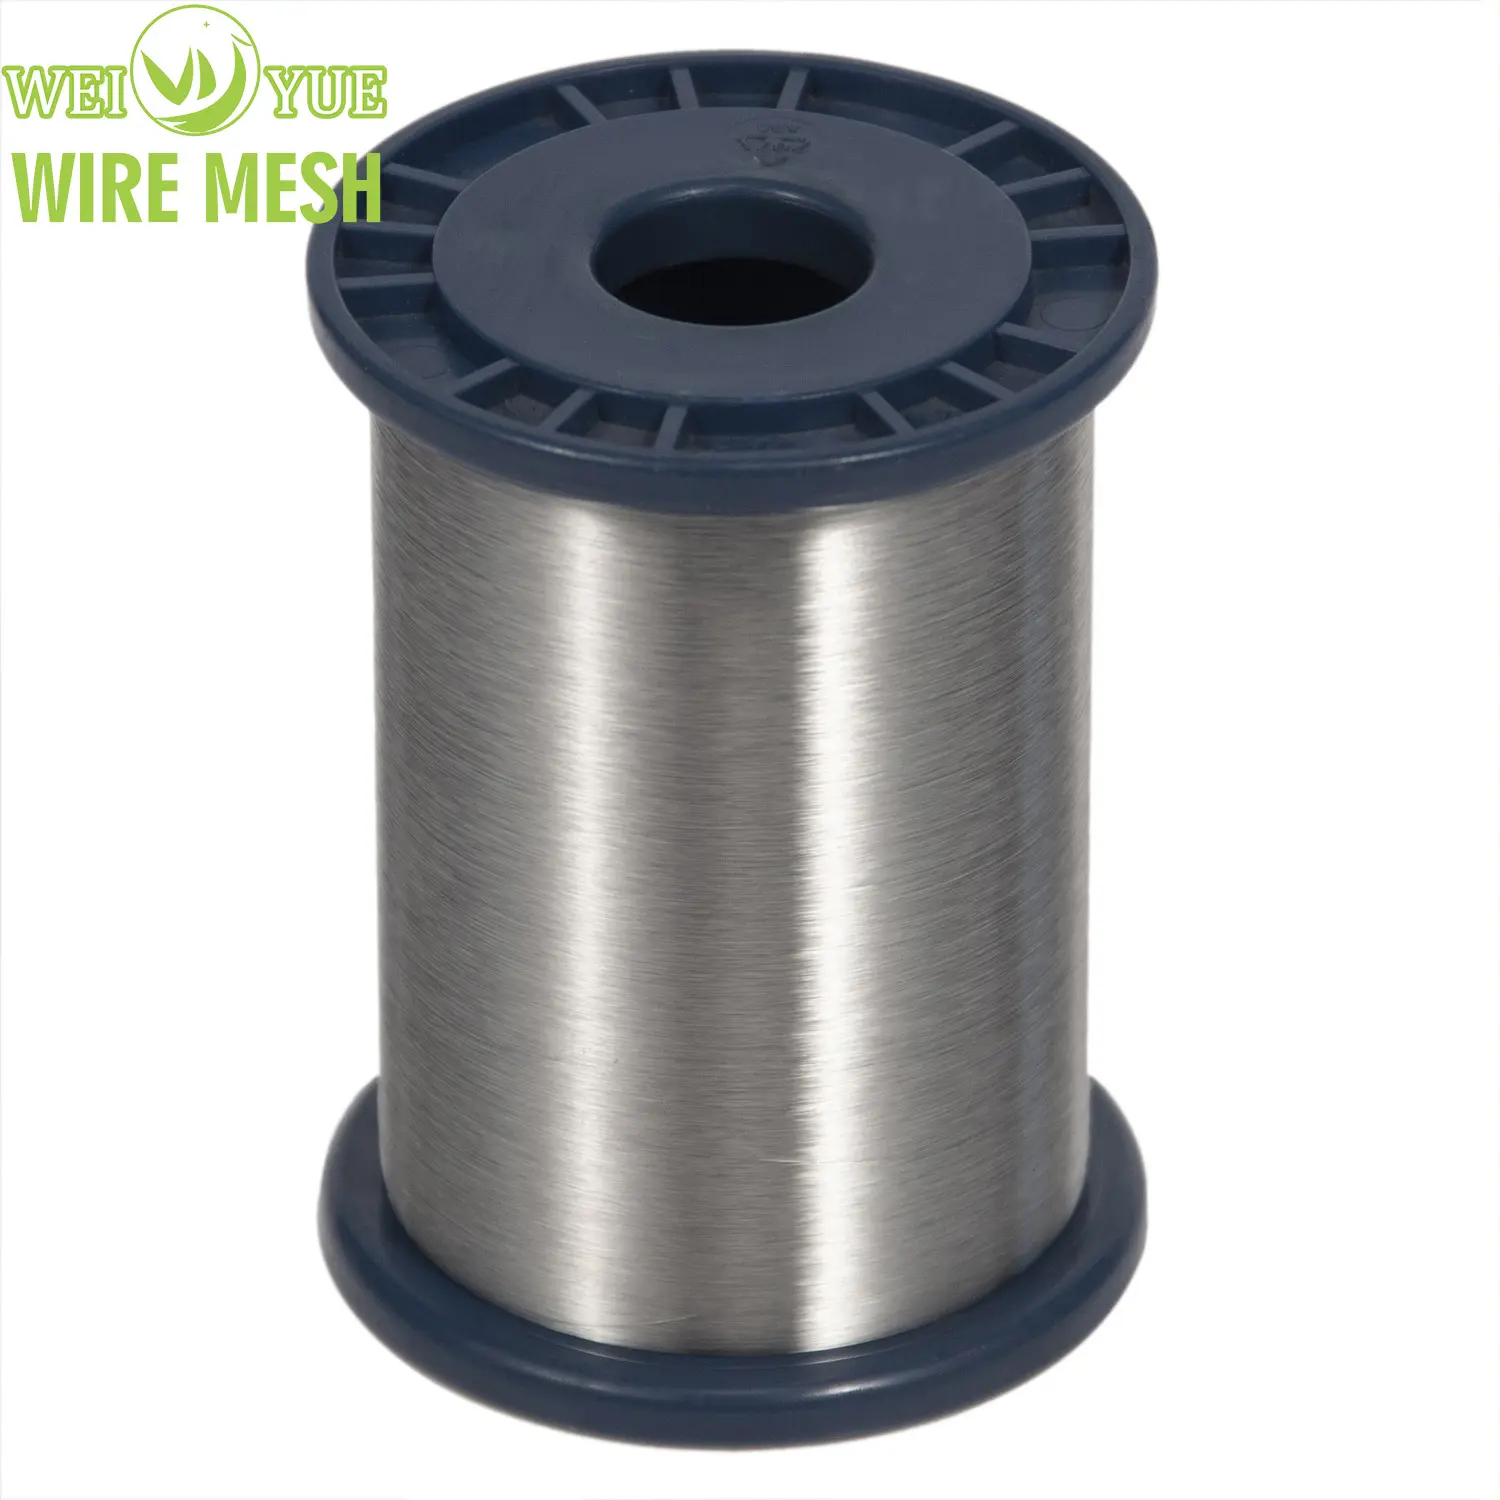 Tekstil için kesmeye dayanıklı iplik/filament için 0.035mm paslanmaz çelik tel